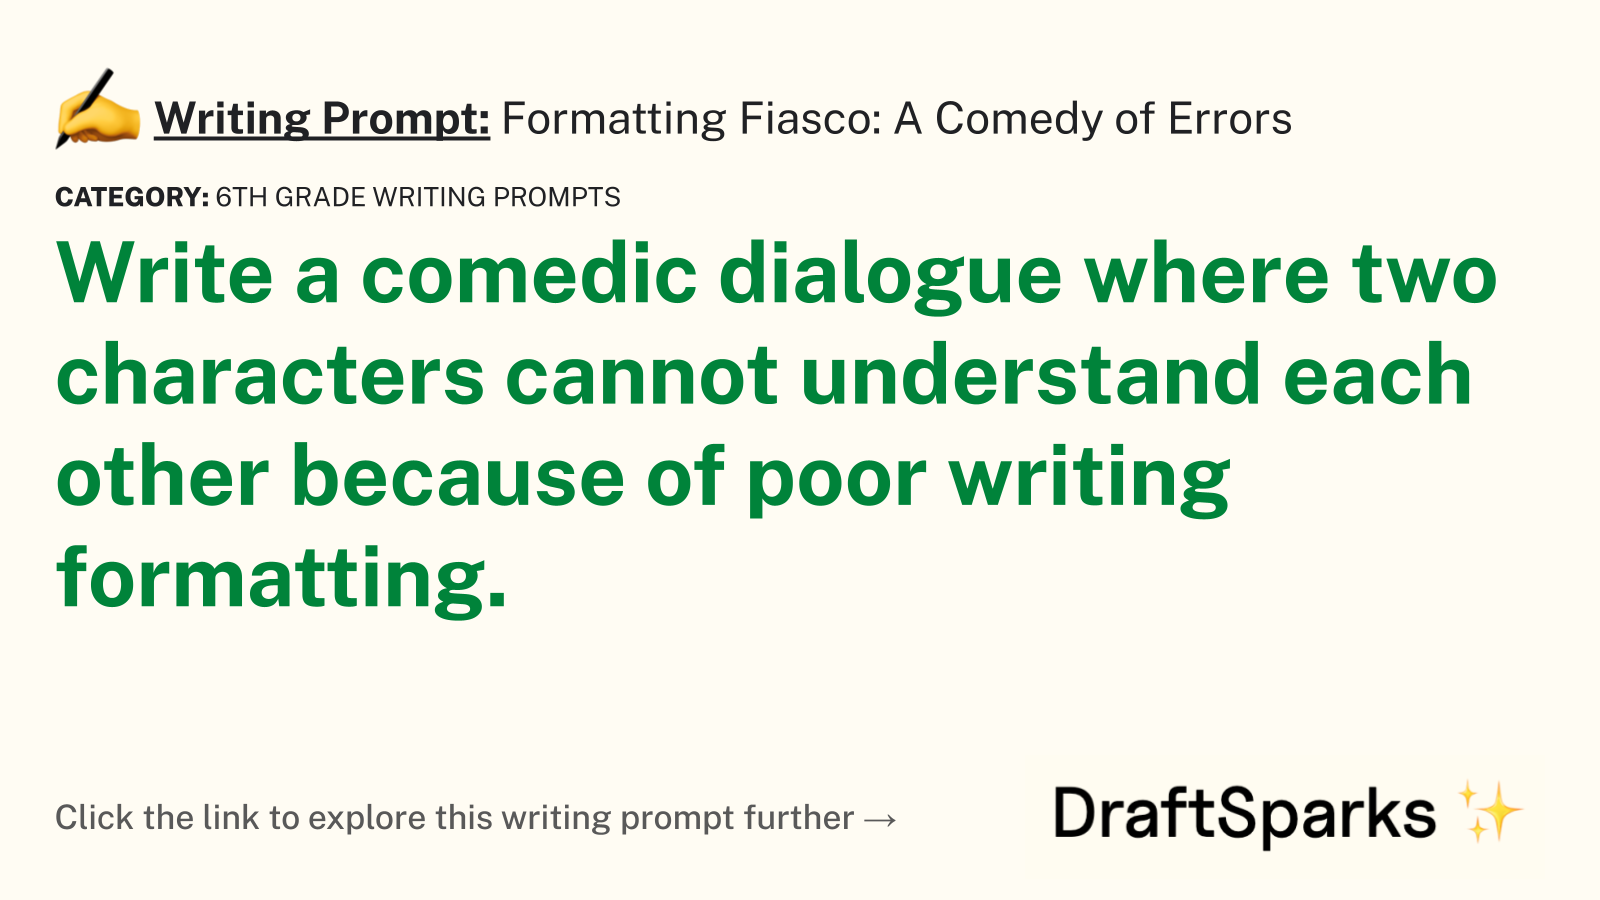 Formatting Fiasco: A Comedy of Errors